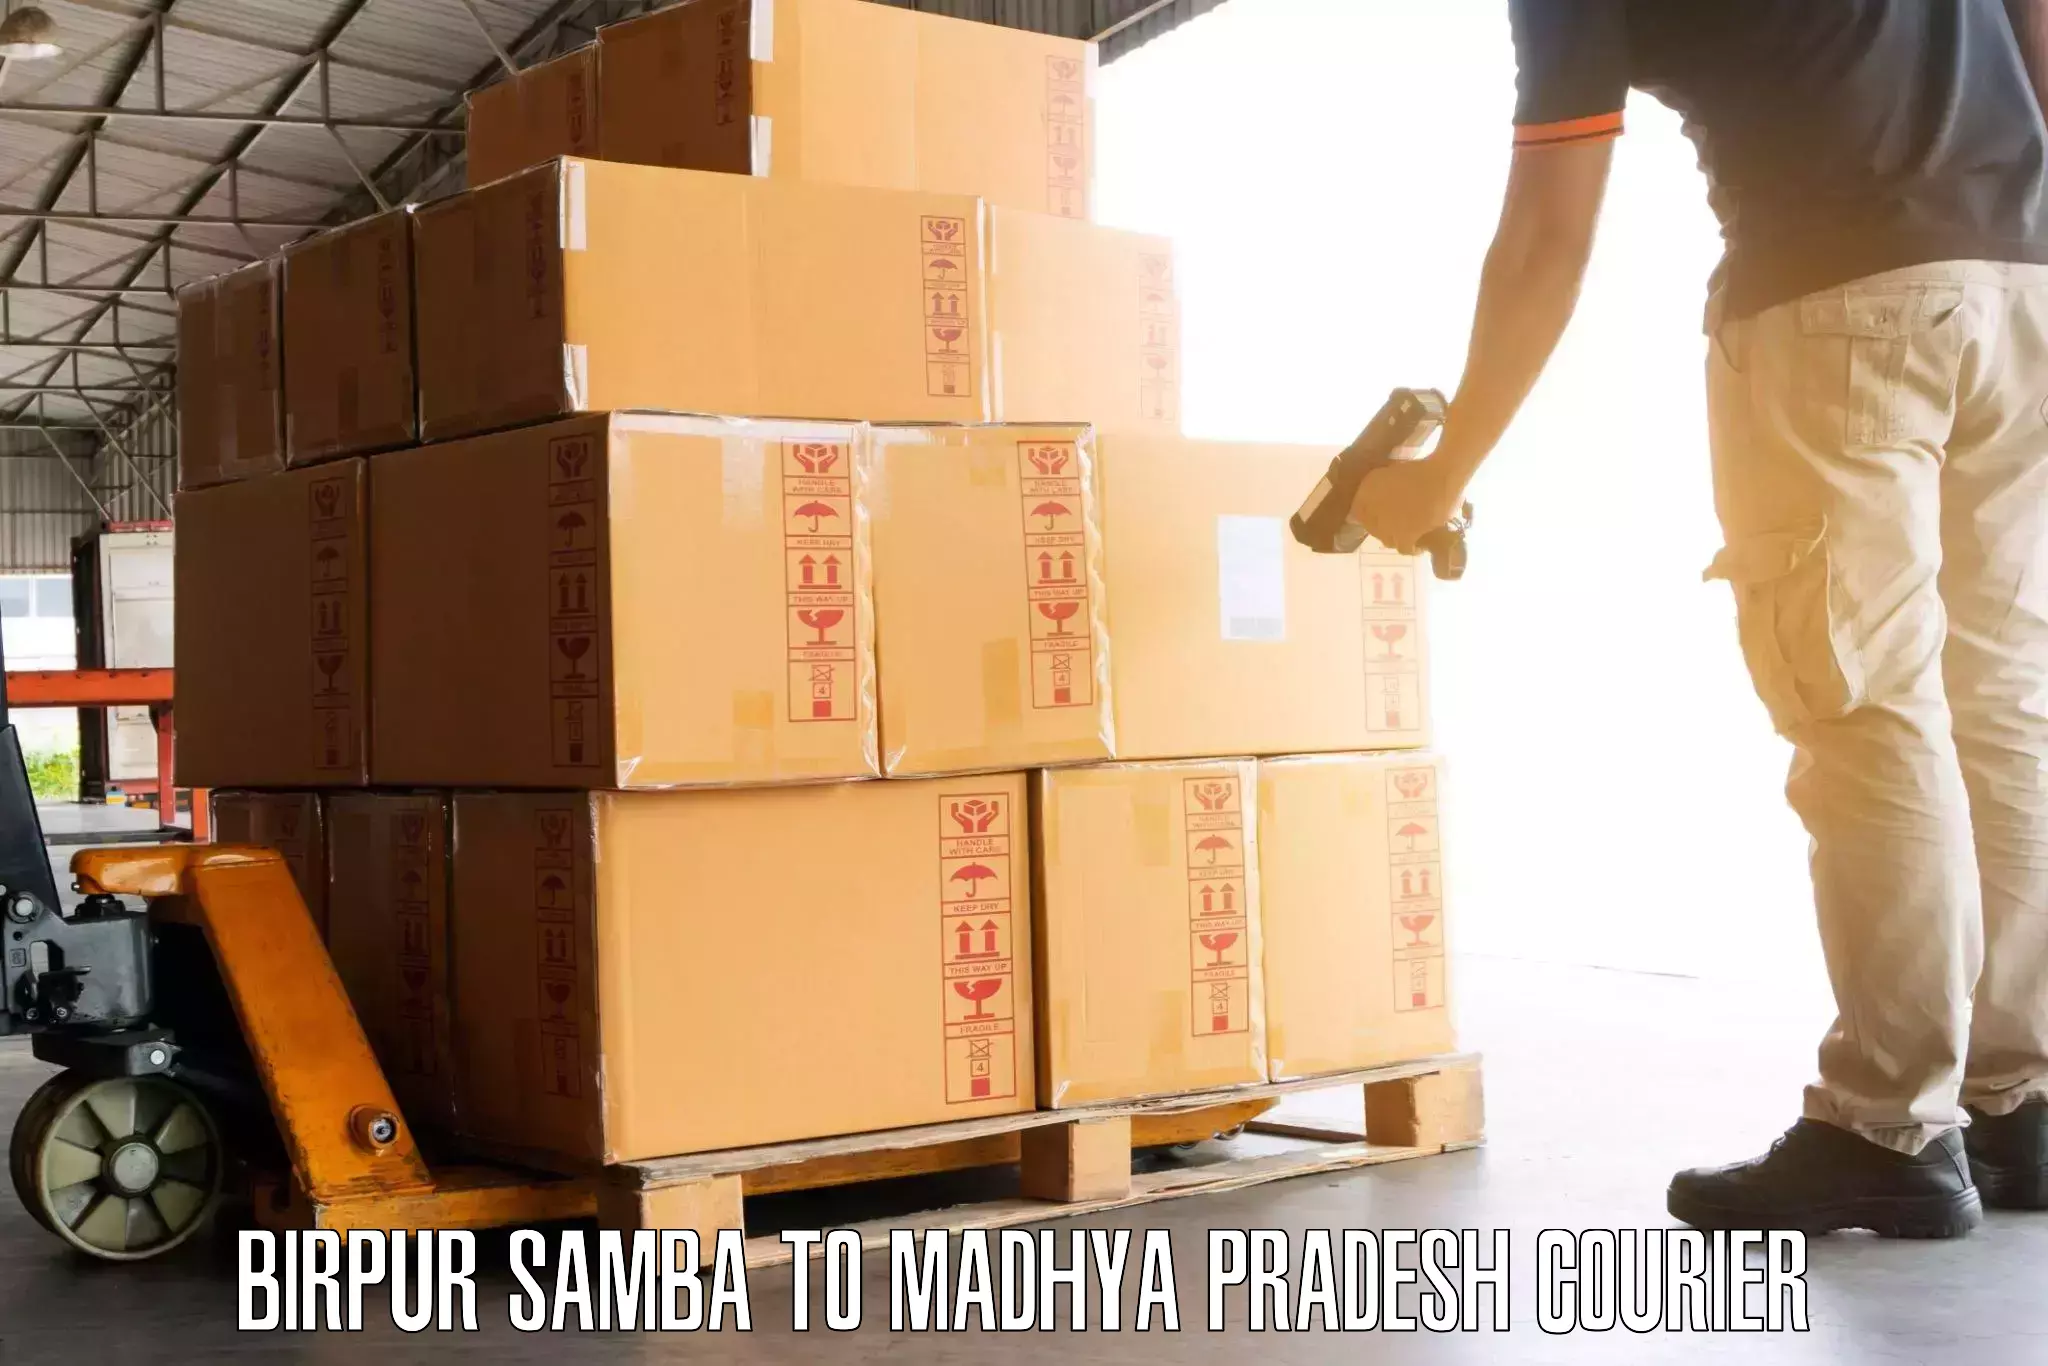 Luggage transfer service Birpur Samba to Pachore